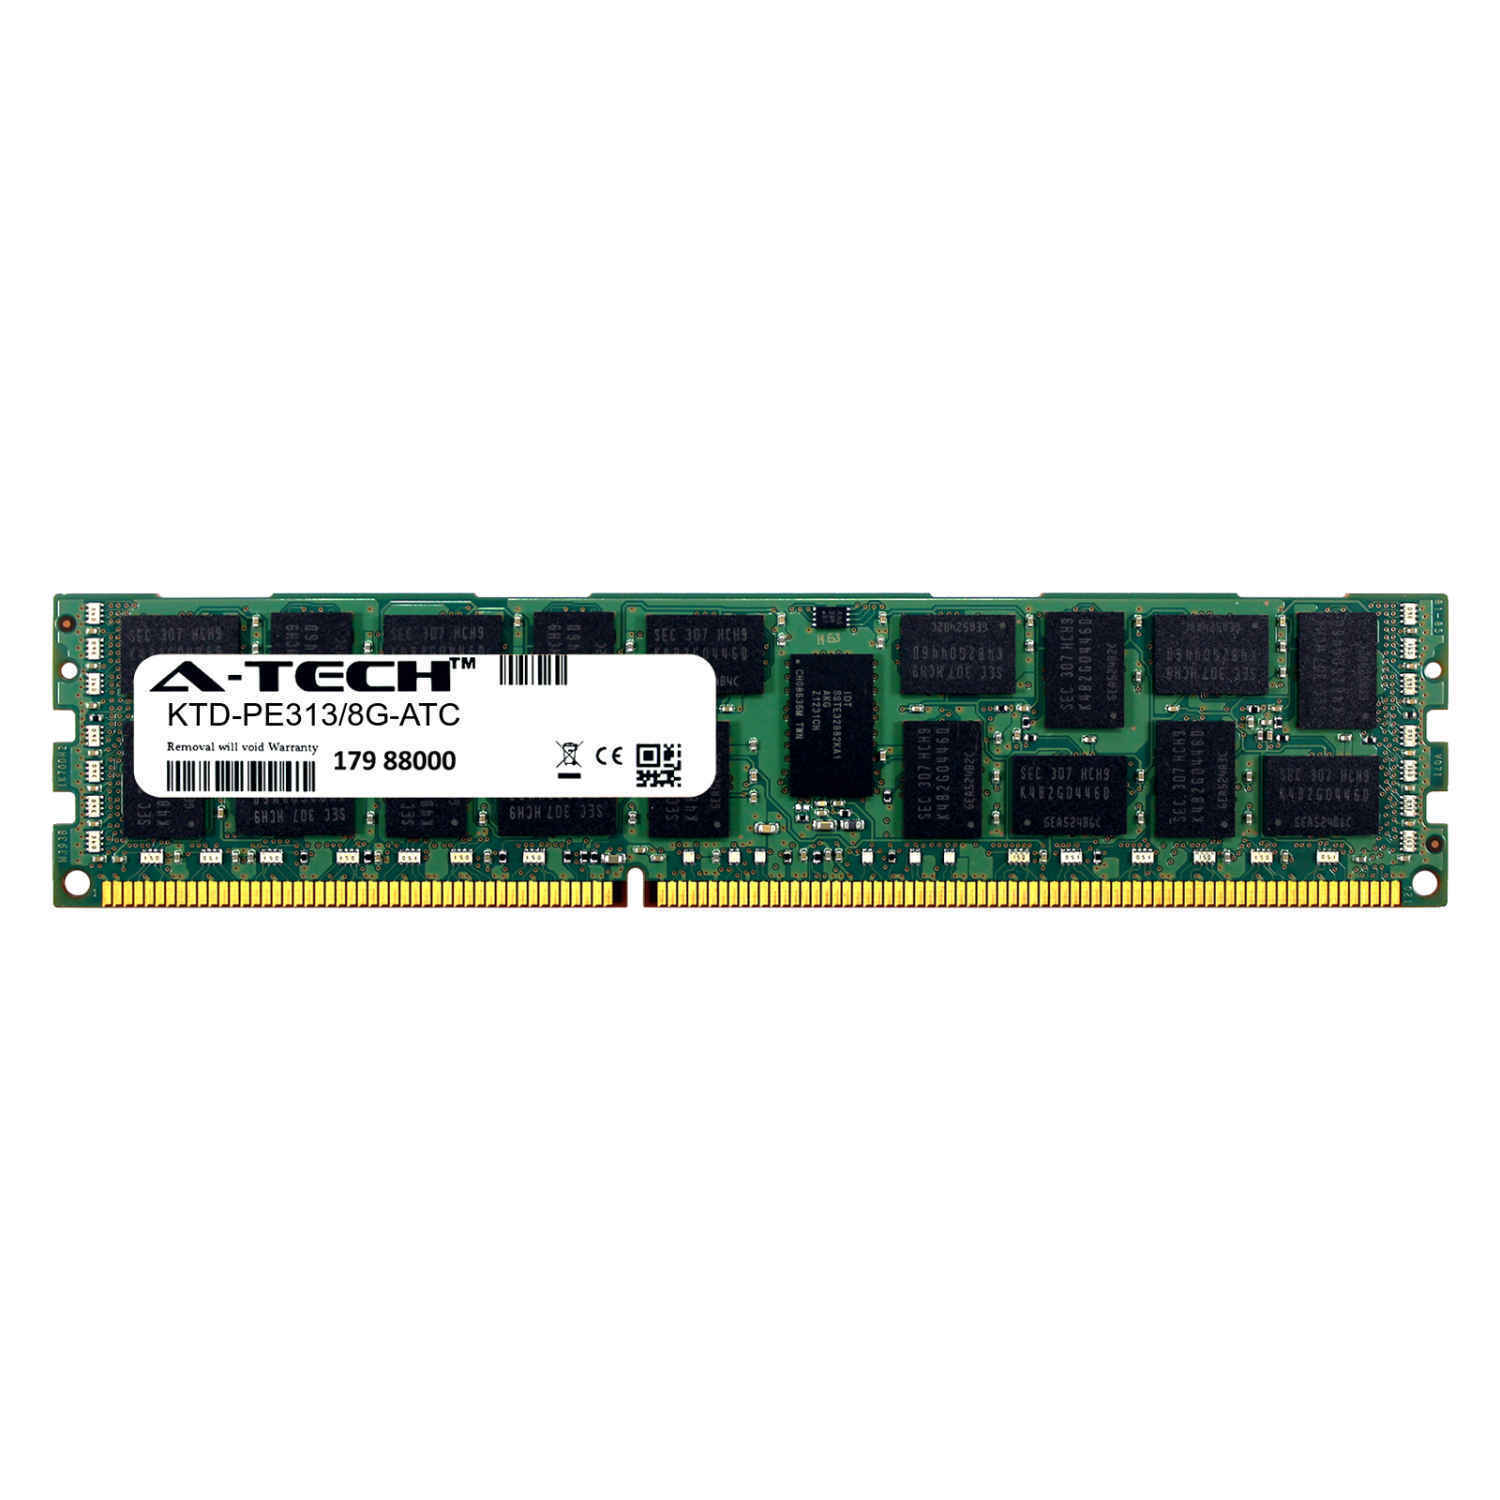 8GB DDR3 PC3-10600R RDIMM (Kingston KTD-PE313/8G Equivalent) Server Memory RAM